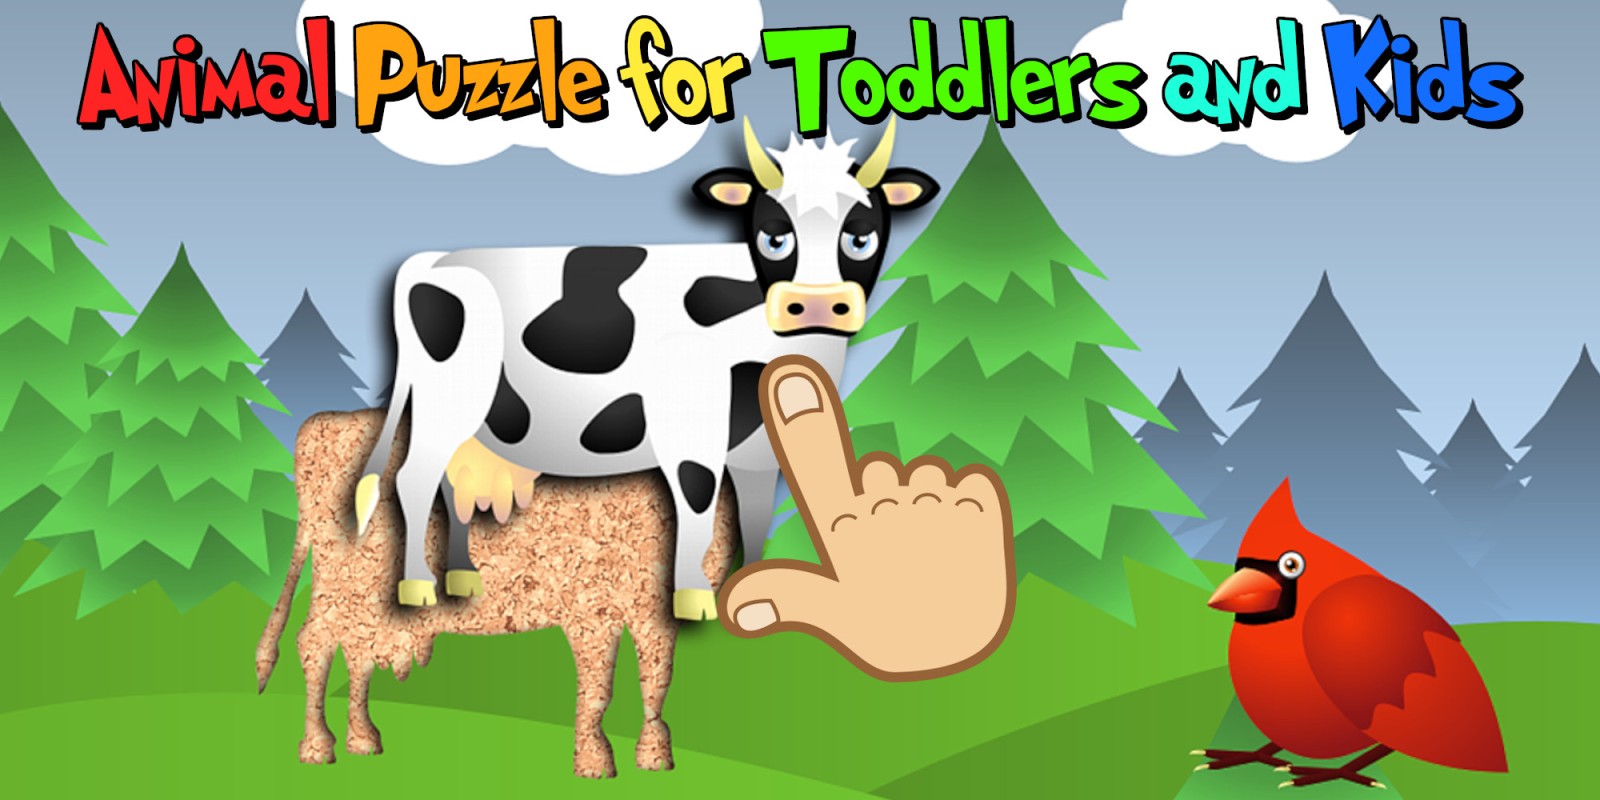 Animal Puzzle for Toddlers and Kids - обучающая и веселая игра для дошкольников и детских садов